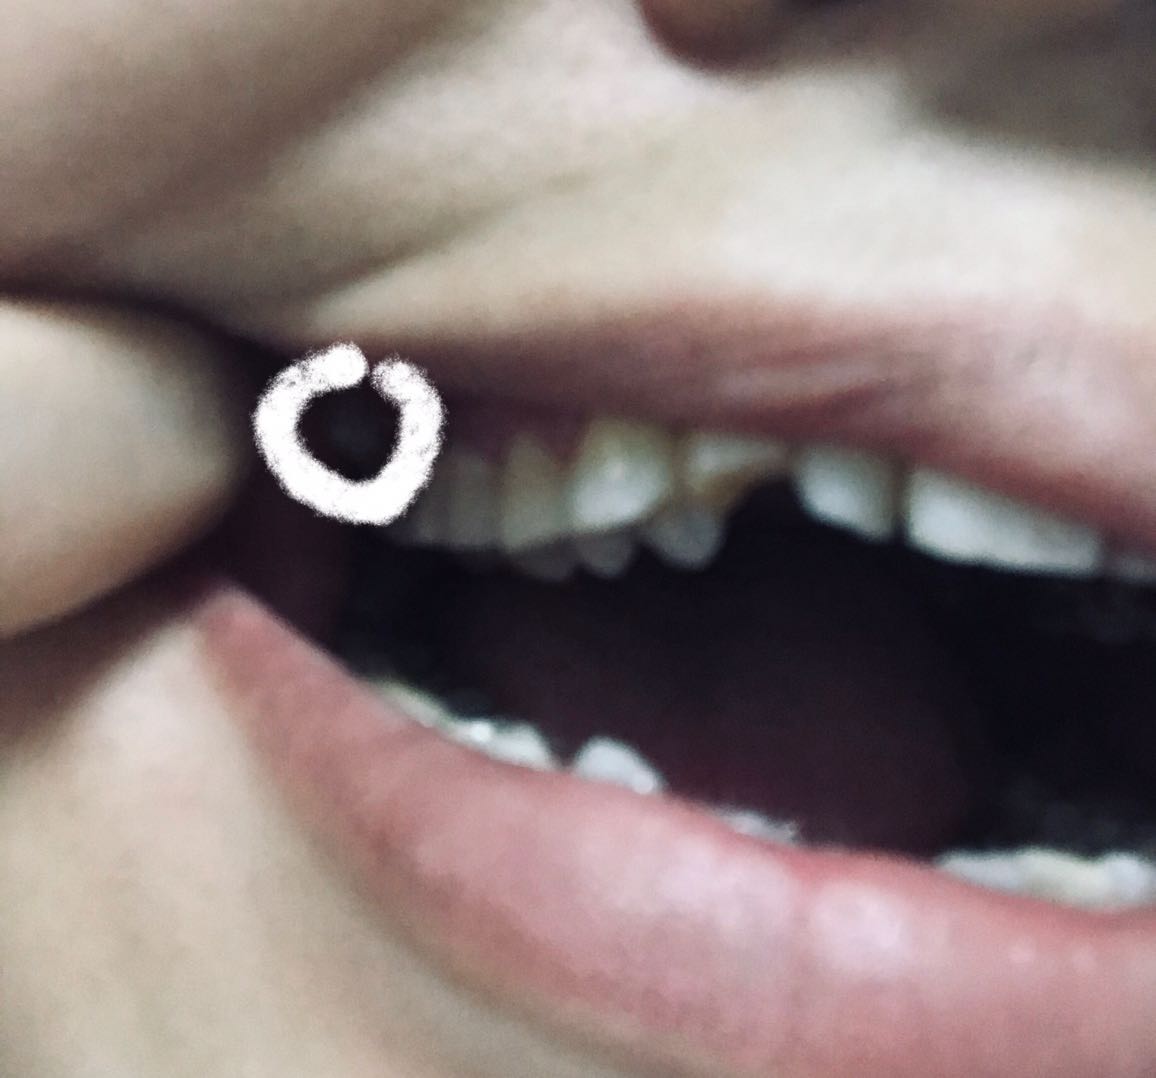 最后一颗大牙长的特别倾斜图上圈出来的就是长歪的大牙位置